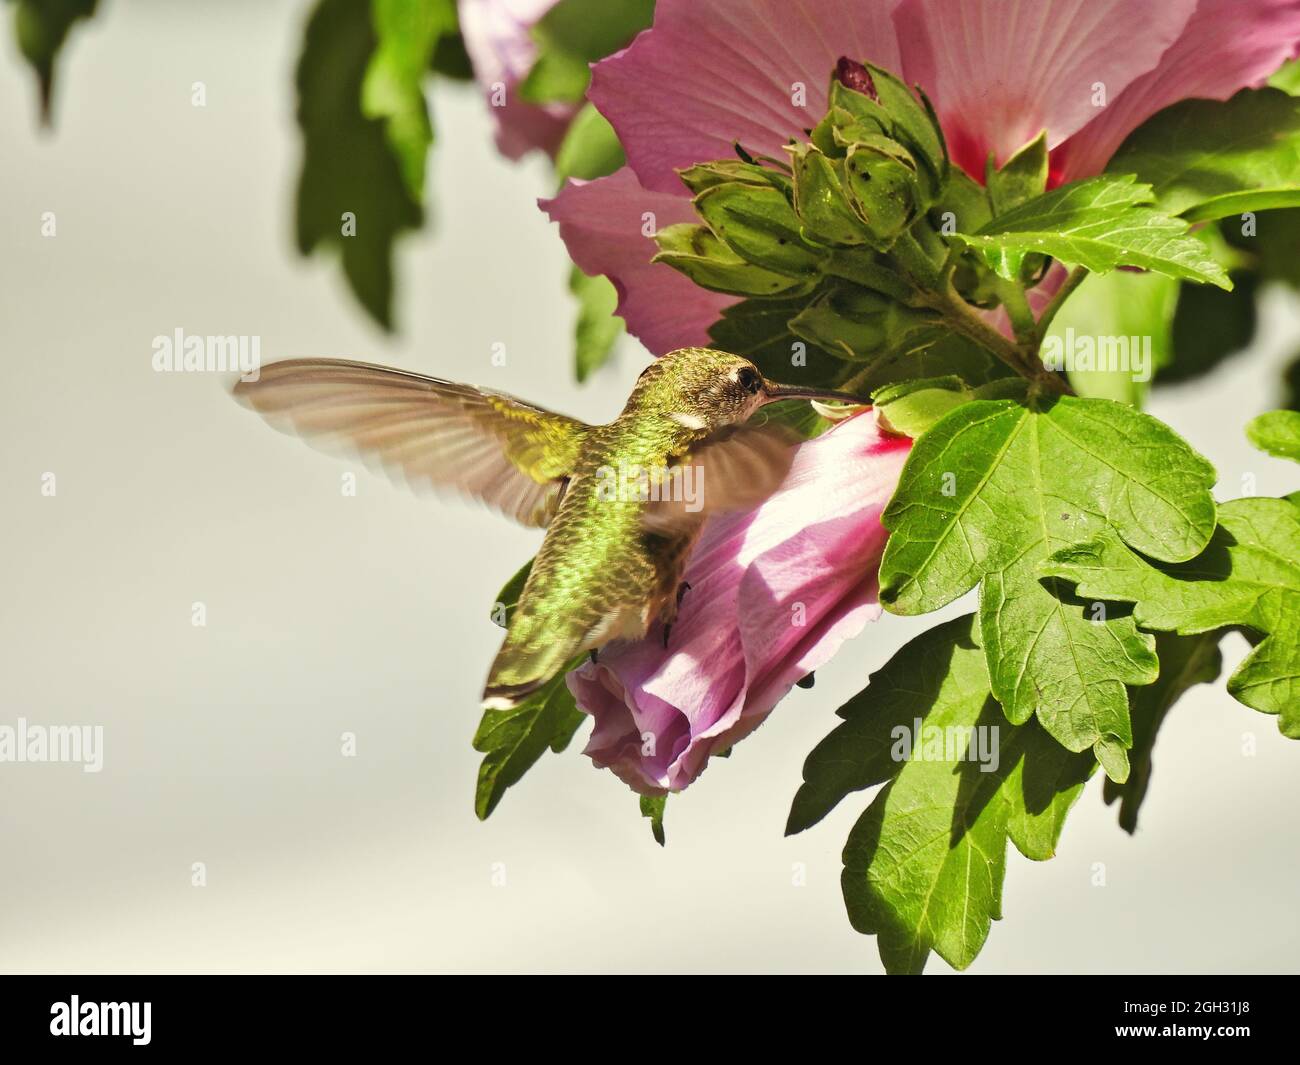 Hummingbird e Flower: Il colibrì con gola rubino si nutre di nettare da un fiore di ibisco mentre è in volo in una luminosa giornata estiva Foto Stock